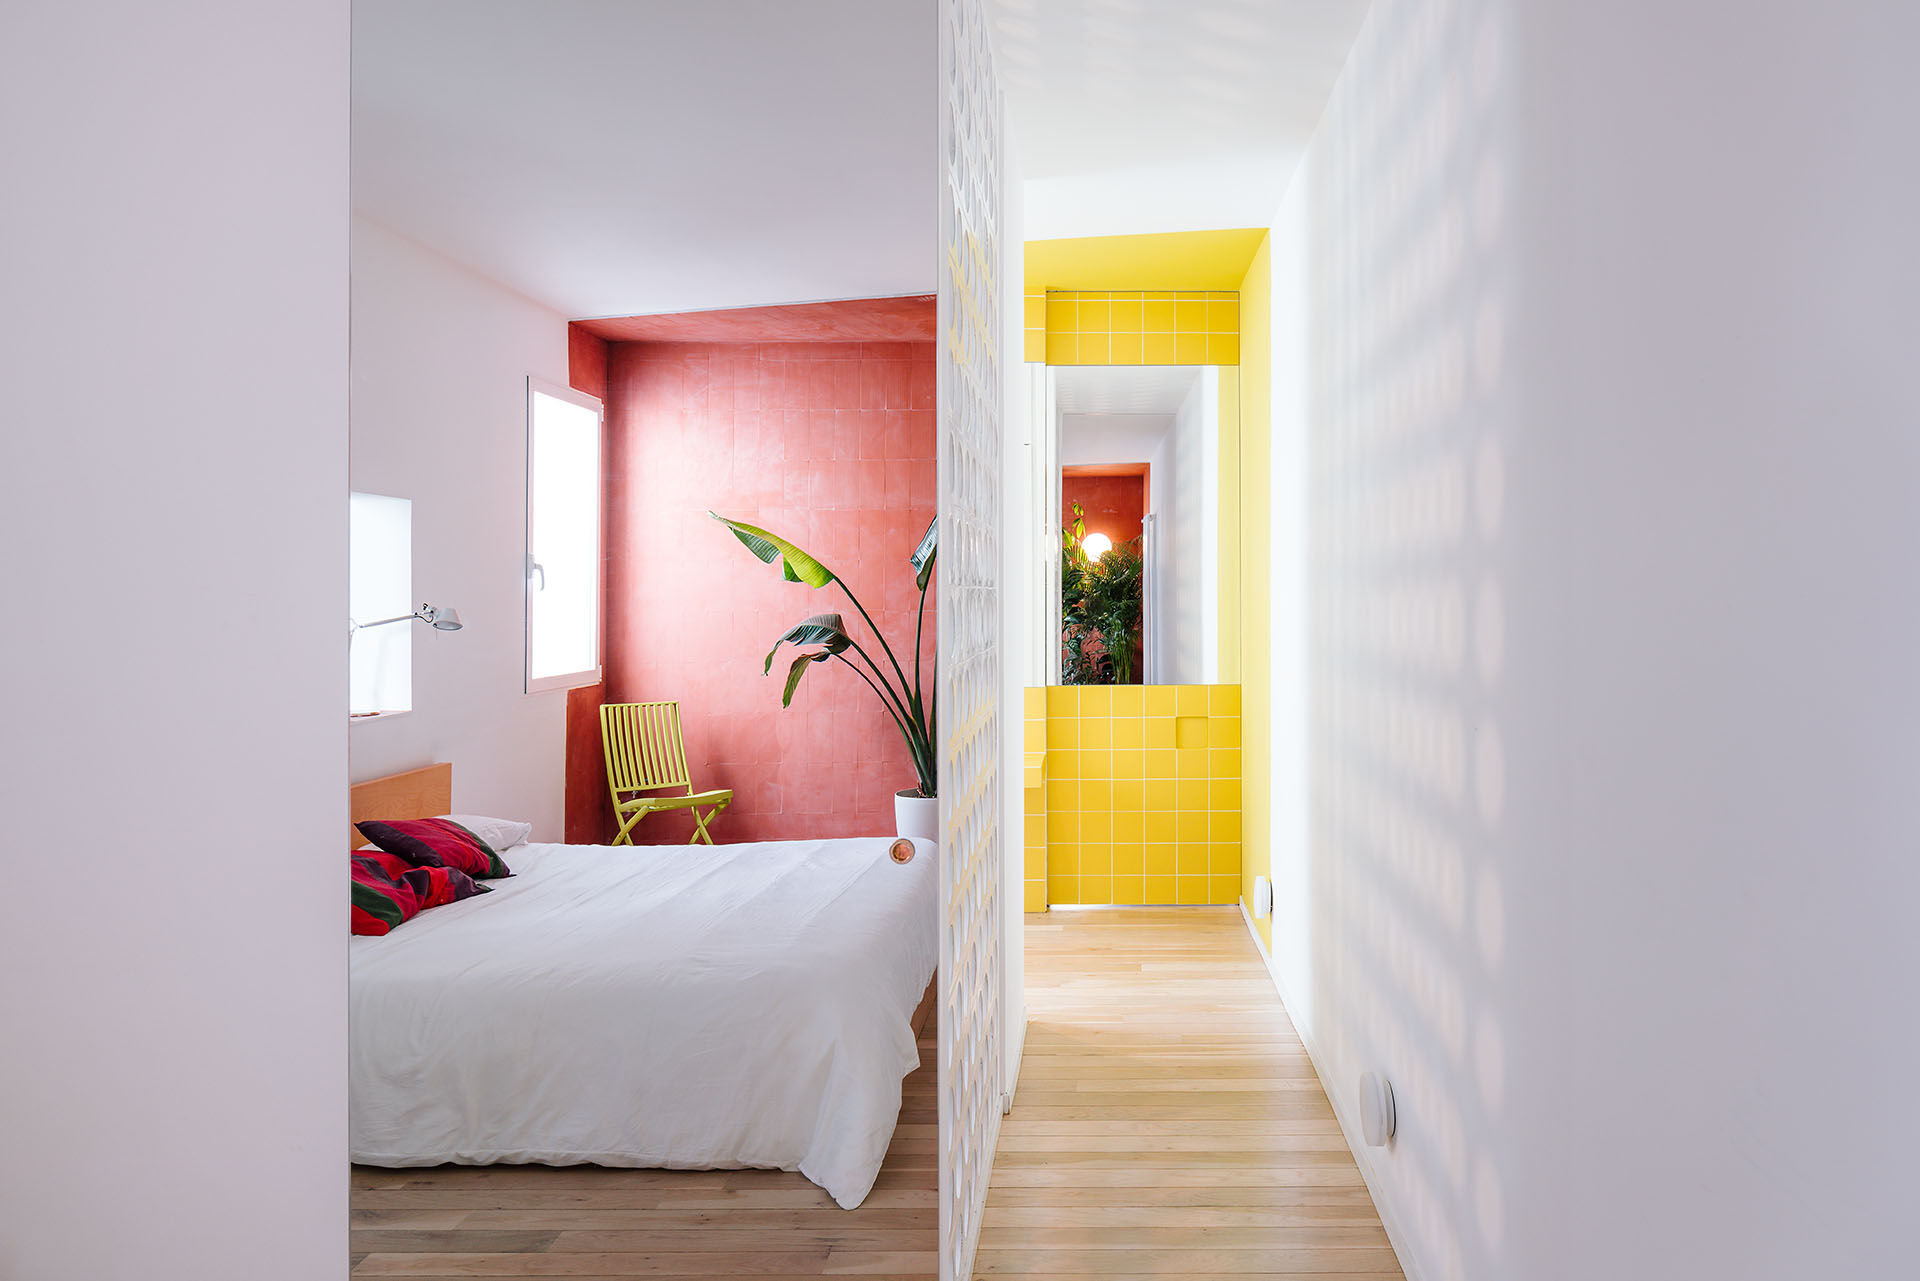 NTK Gonzalo Pardo và Ana Torres đã thiết kế căn hộ tại Madrid (Tây Ban Nha) với phong cách trẻ trung nhờ gam màu đỏ quyến rũ trong phòng ngủ và sắc vàng rực rỡ bên ngoài. Tất cả tạo nên bức tranh sống động trên phông nền màu trắng sạch sẽ.